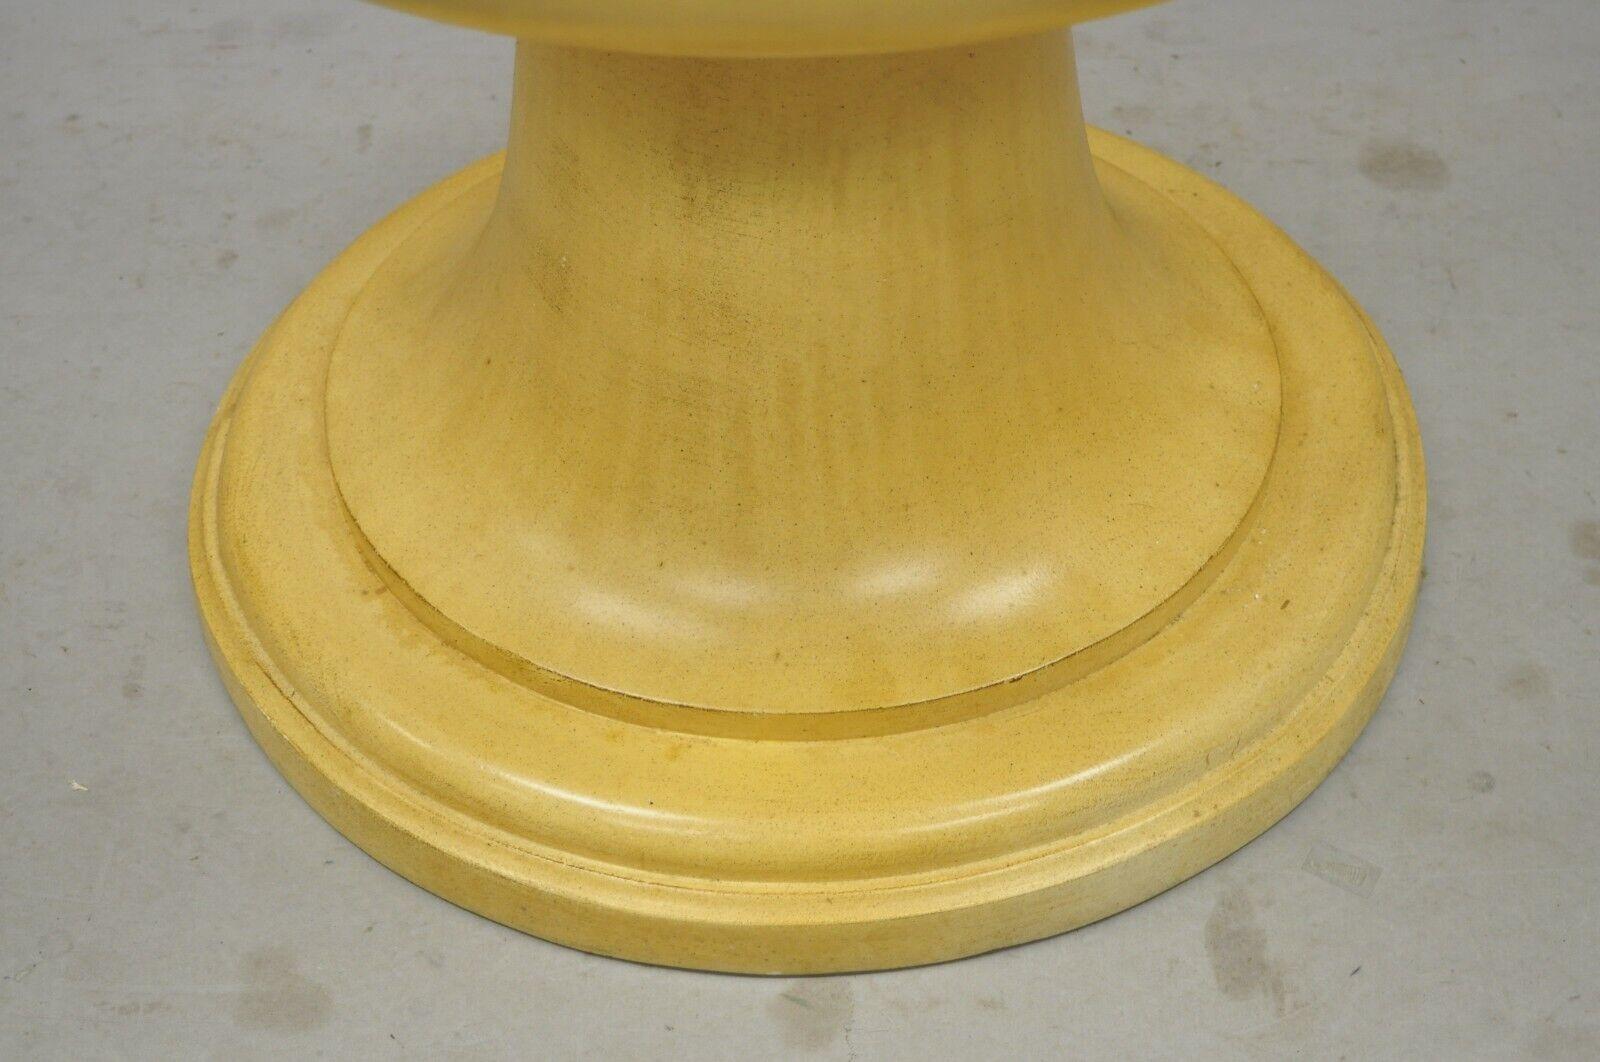 Neoclassical Vintage Fiberglass Urn Form Dining Table Pedestal Base For Sale